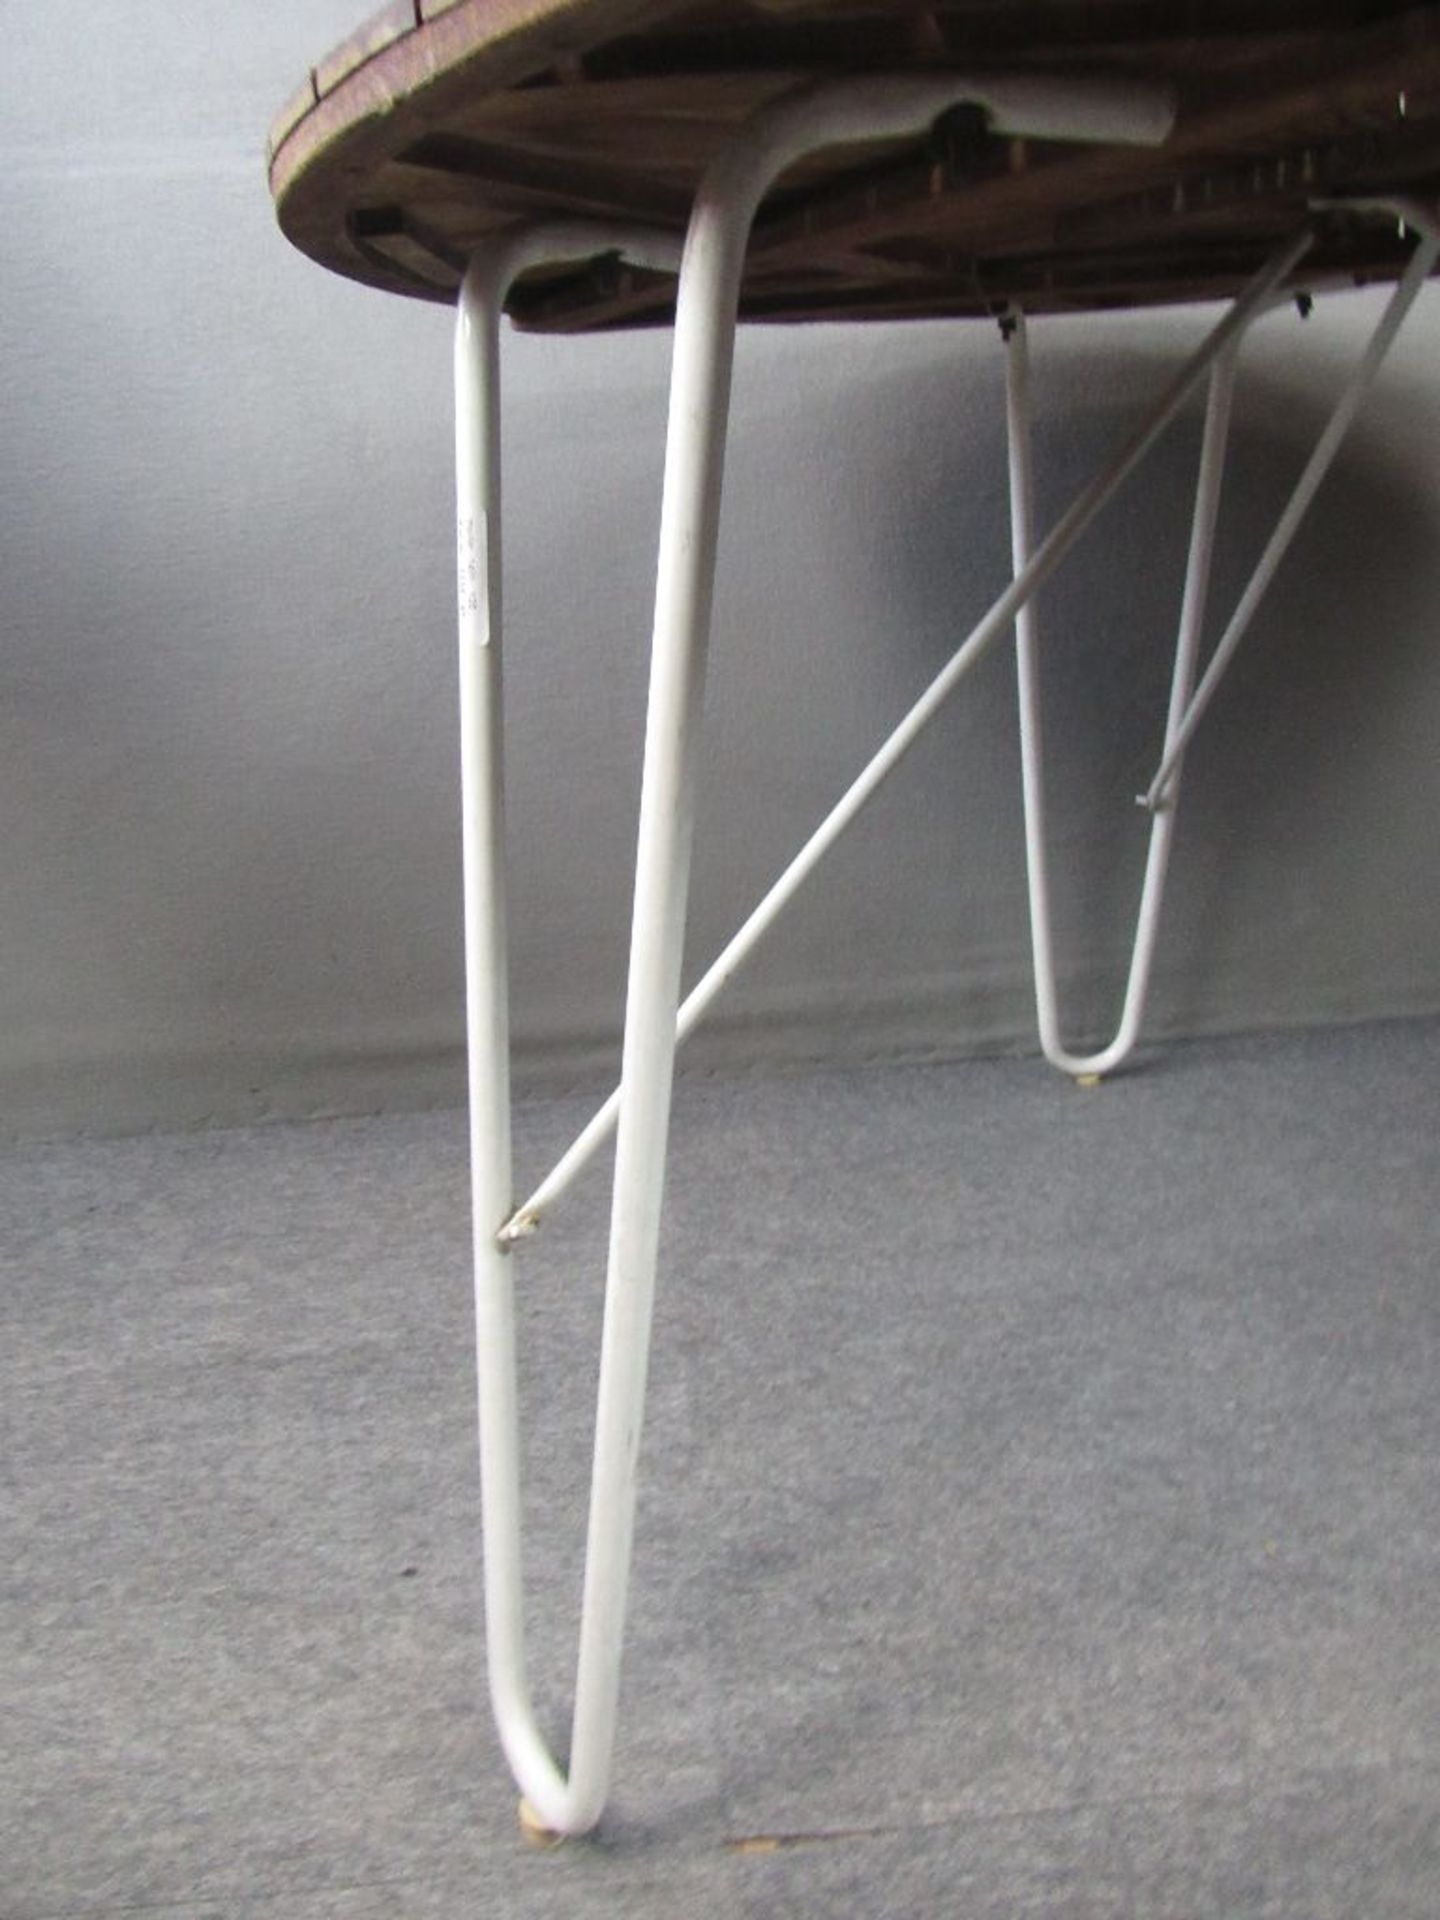 Danish Design Tisch Teakplatte auf drei Schlaufenbeinen diese abnehmbar Modell Madalay Made in - Bild 2 aus 6